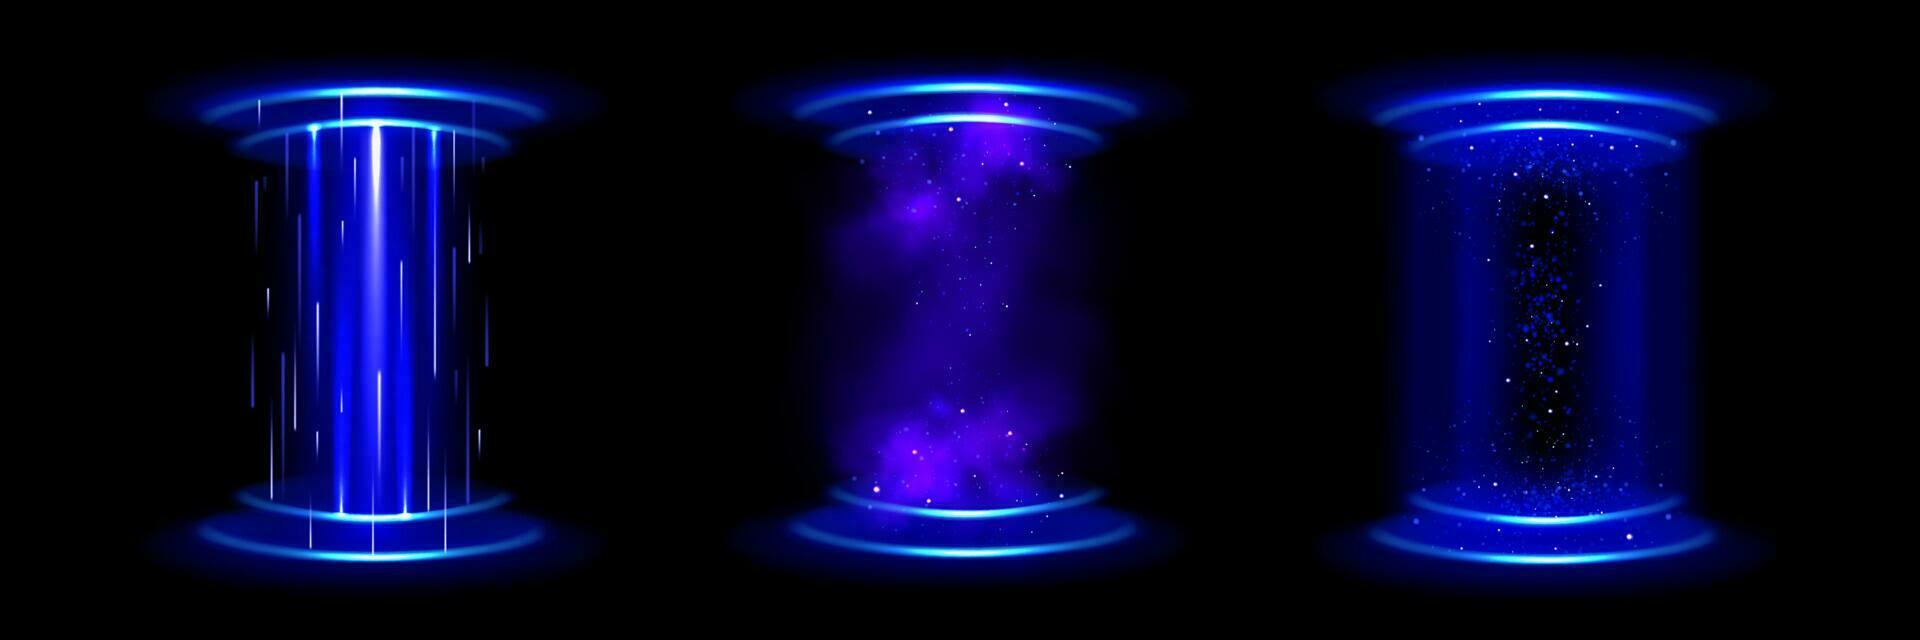 magia portal, teletransportarse con holograma efecto vector